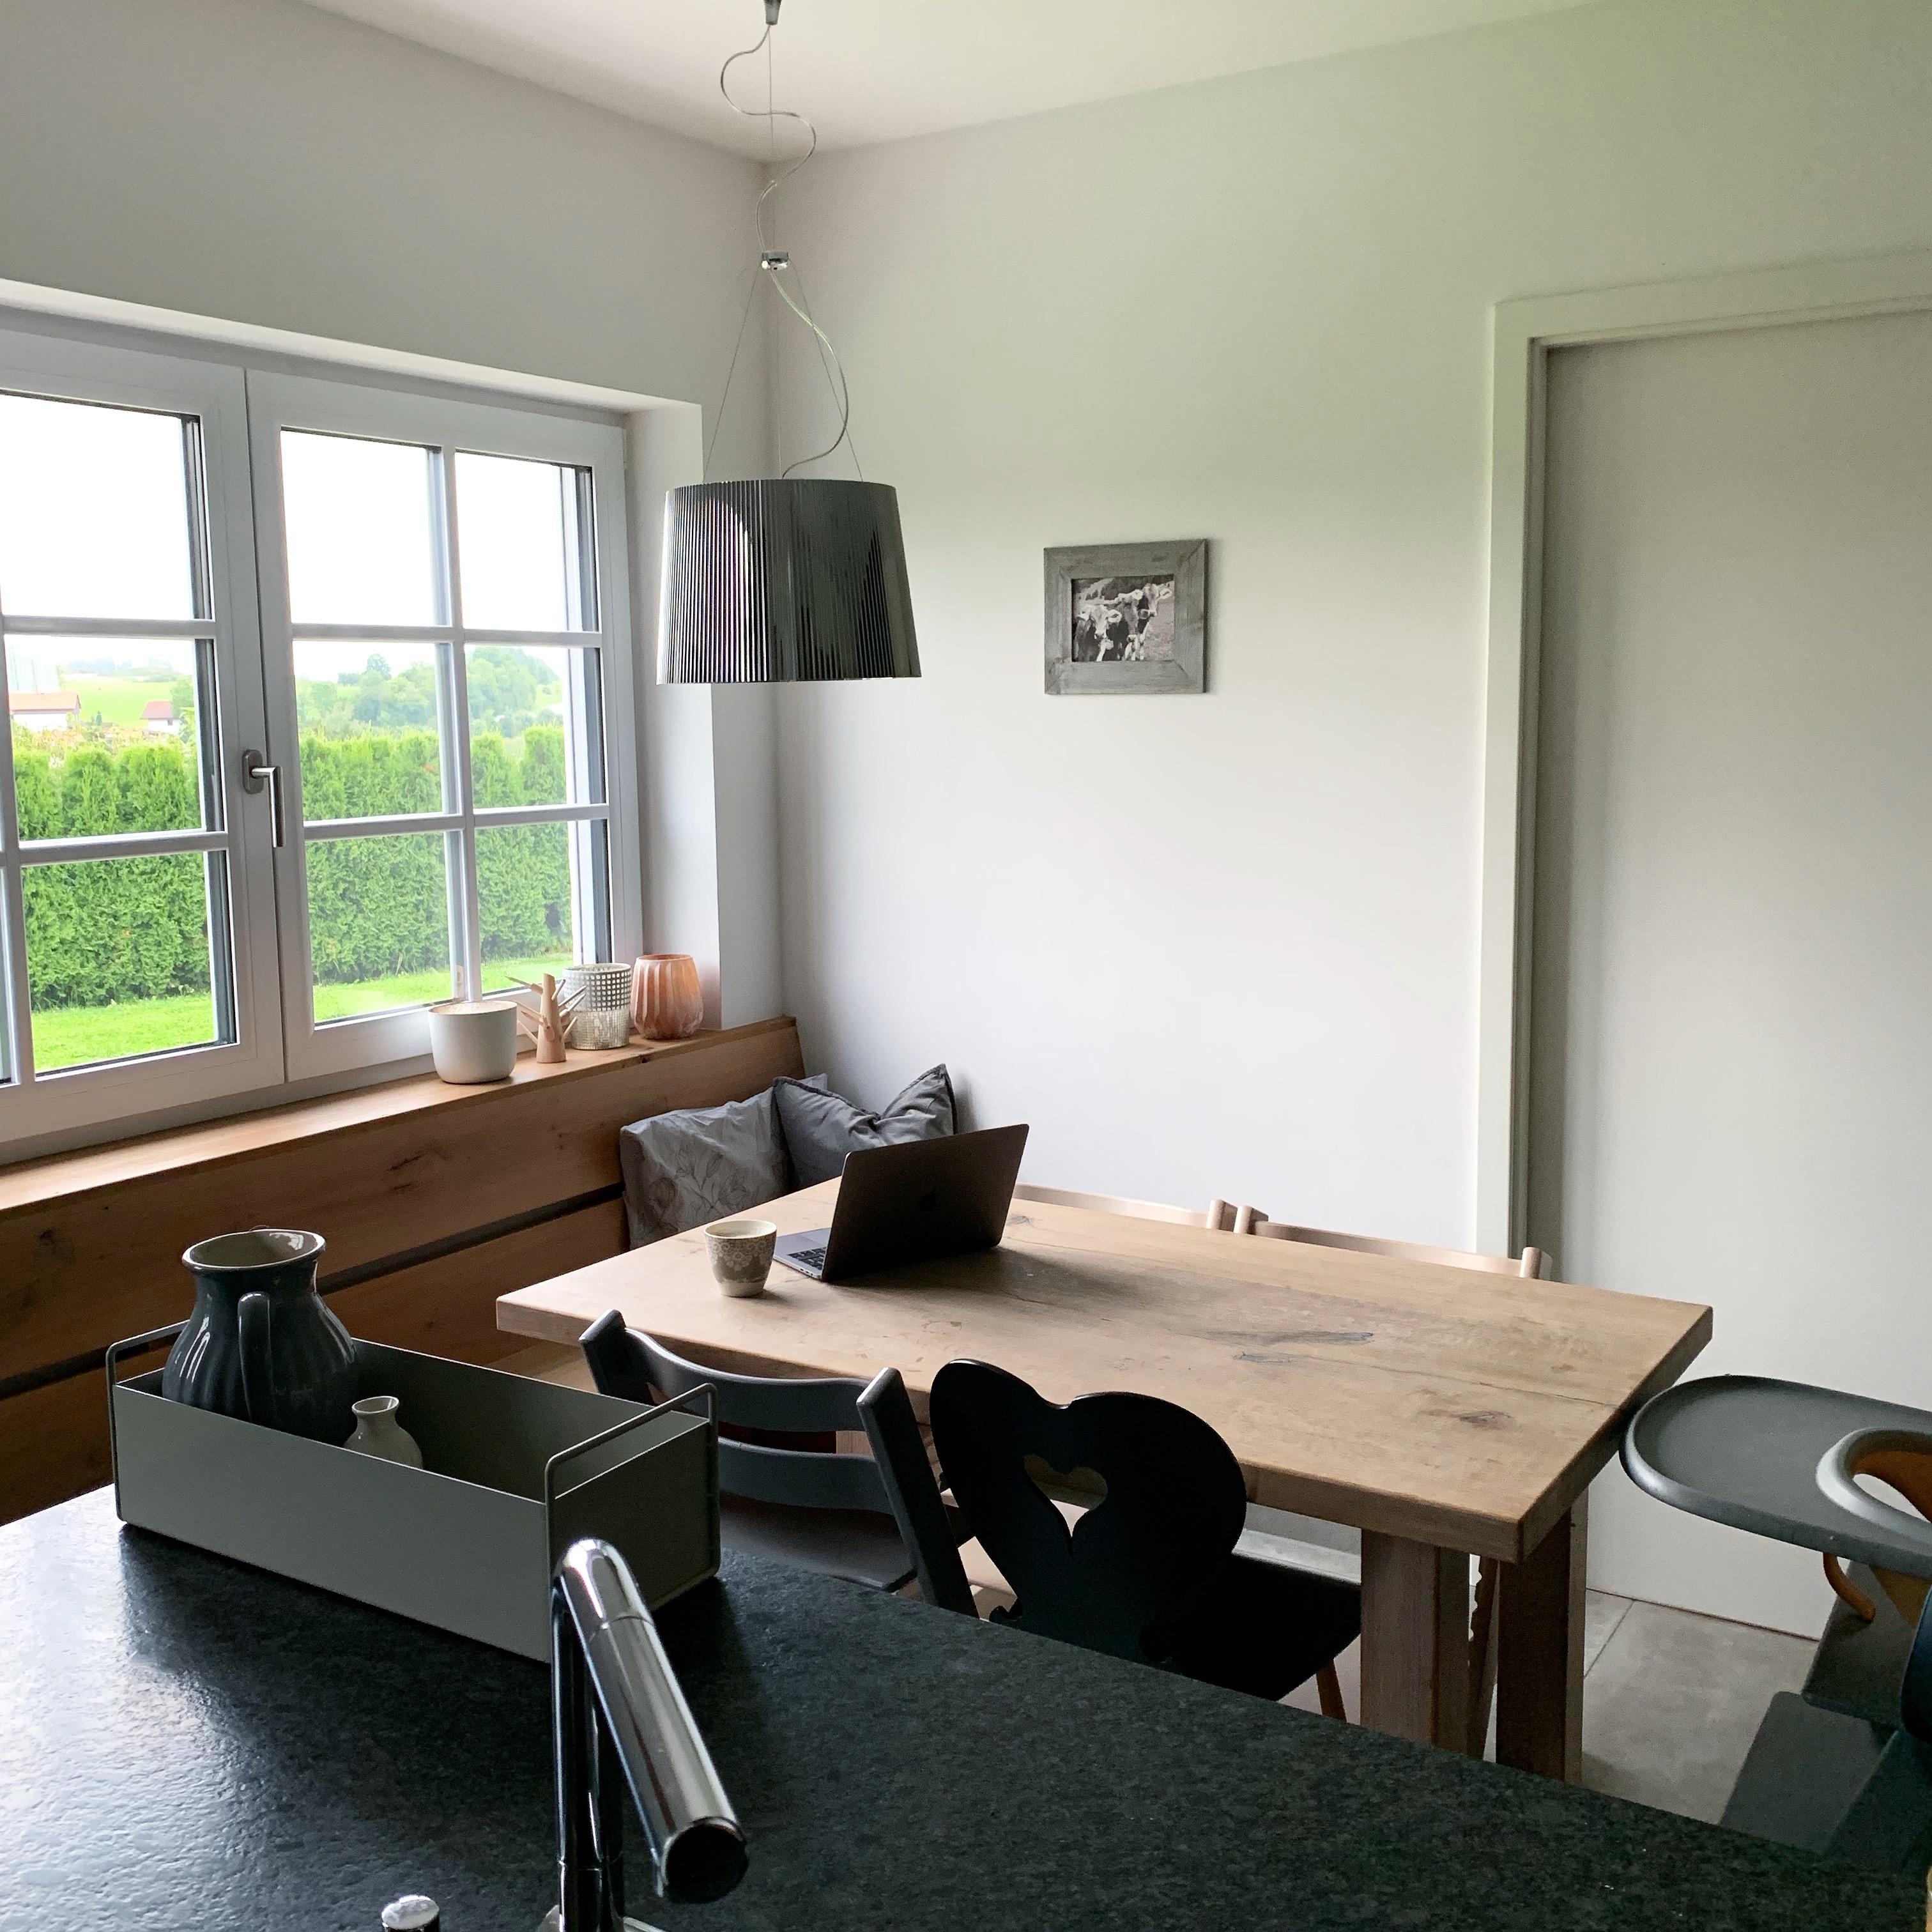 Unser Dreh- und Angelpunkt in der Küche. Hier leben wir! #kitchen #homesweethome #küchenessplatz #solebich #interior